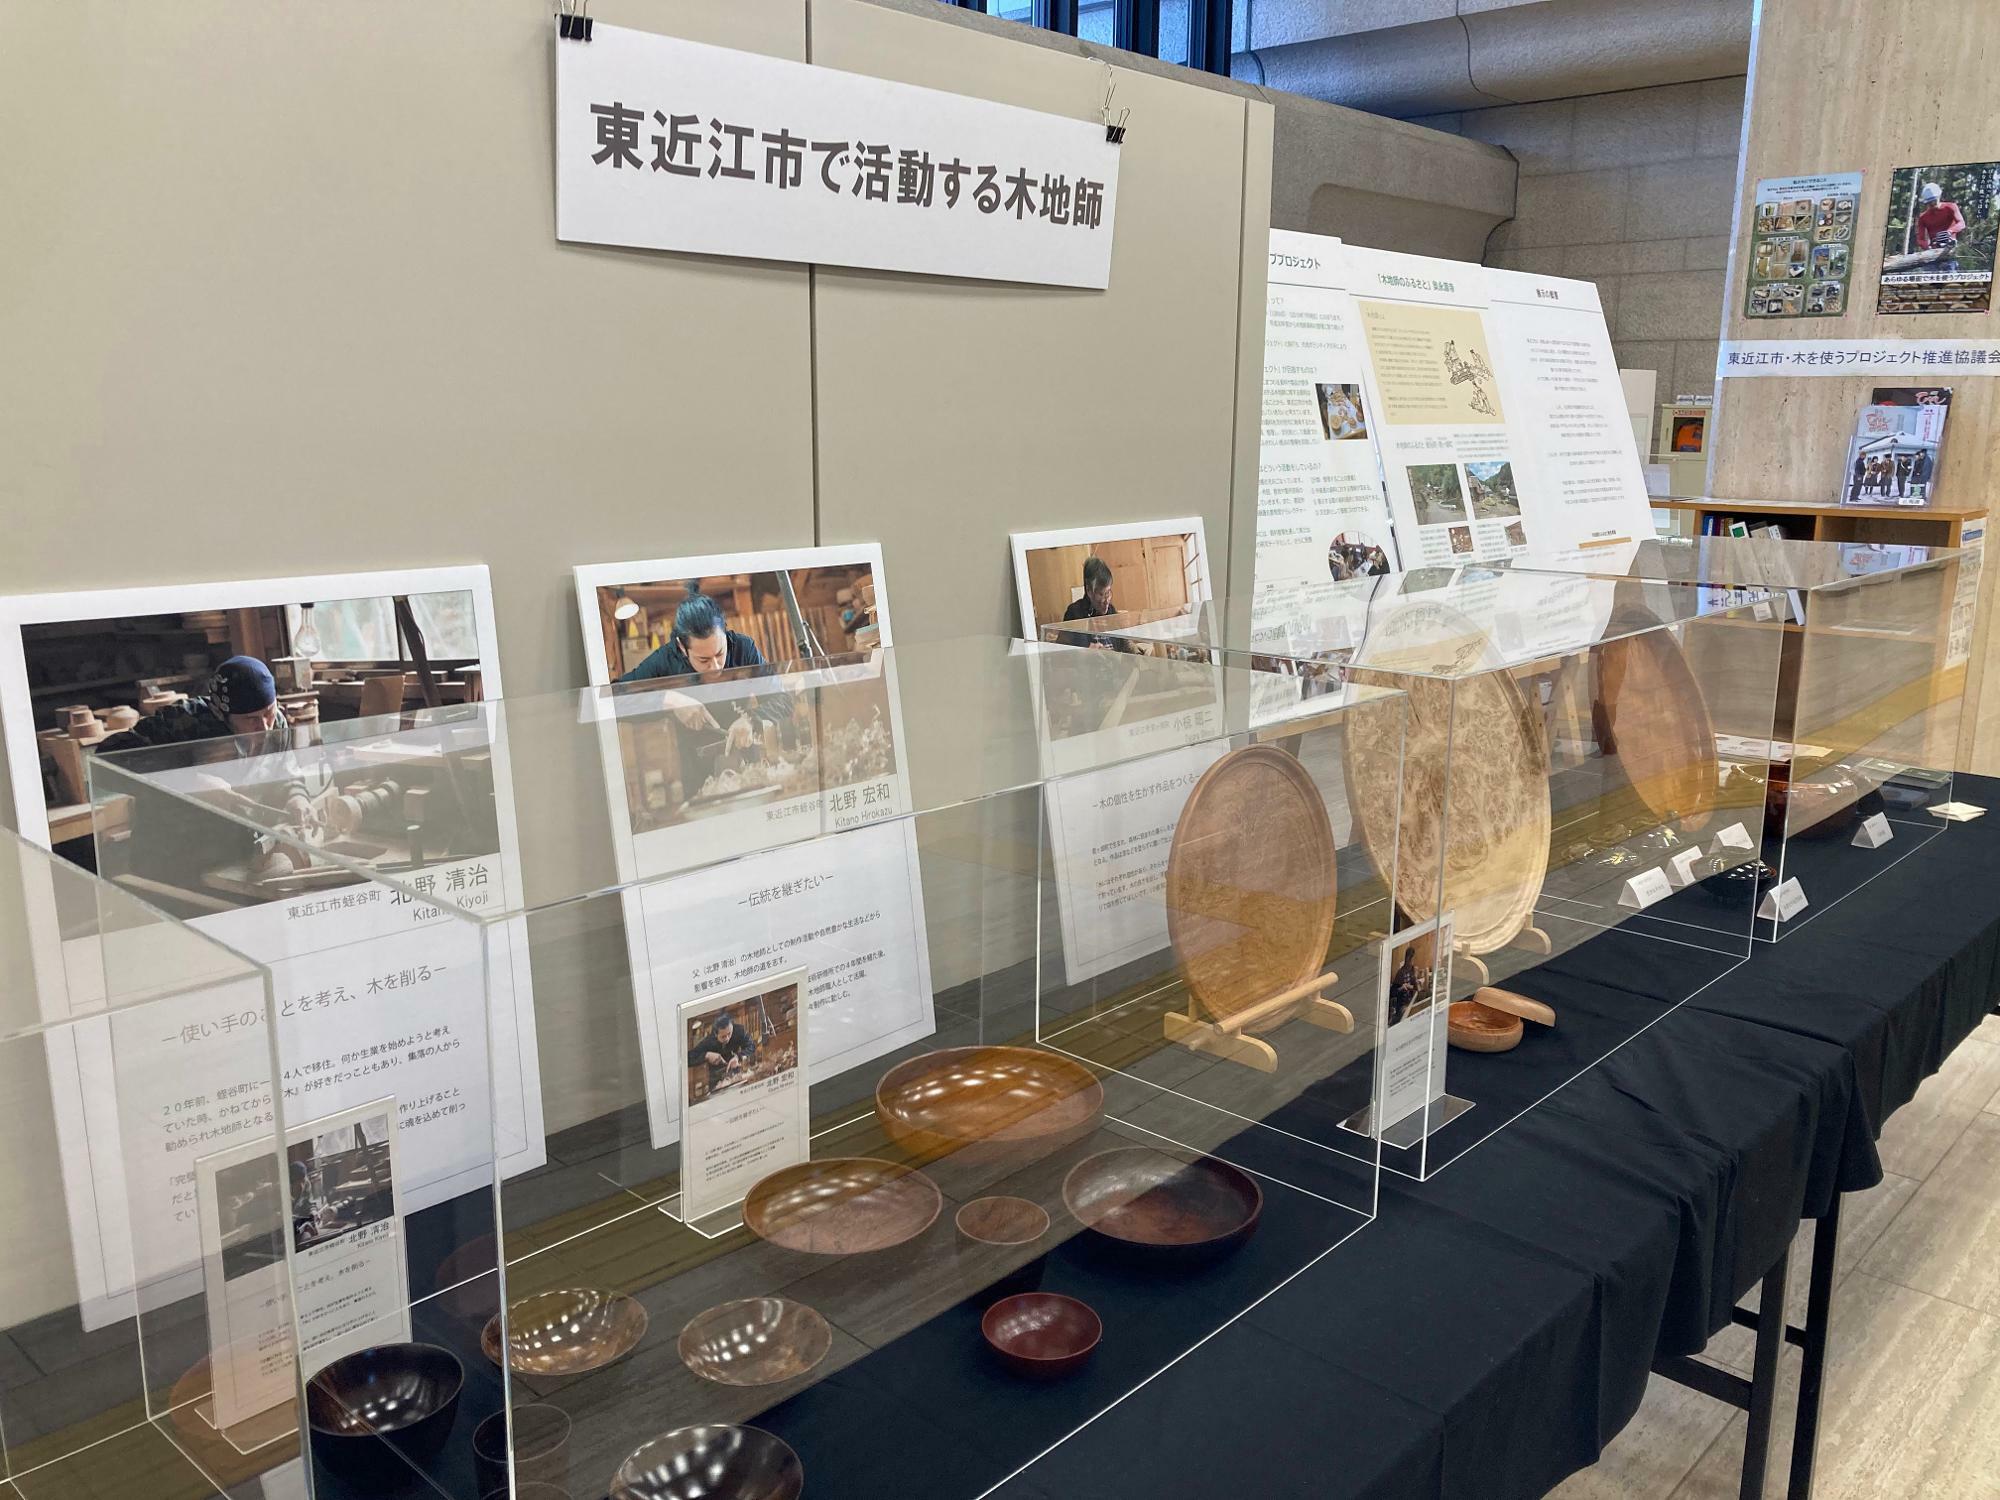 ※東近江市役所での木地師作品展示会は、2022年2月28日から3月16日まで開催されていました